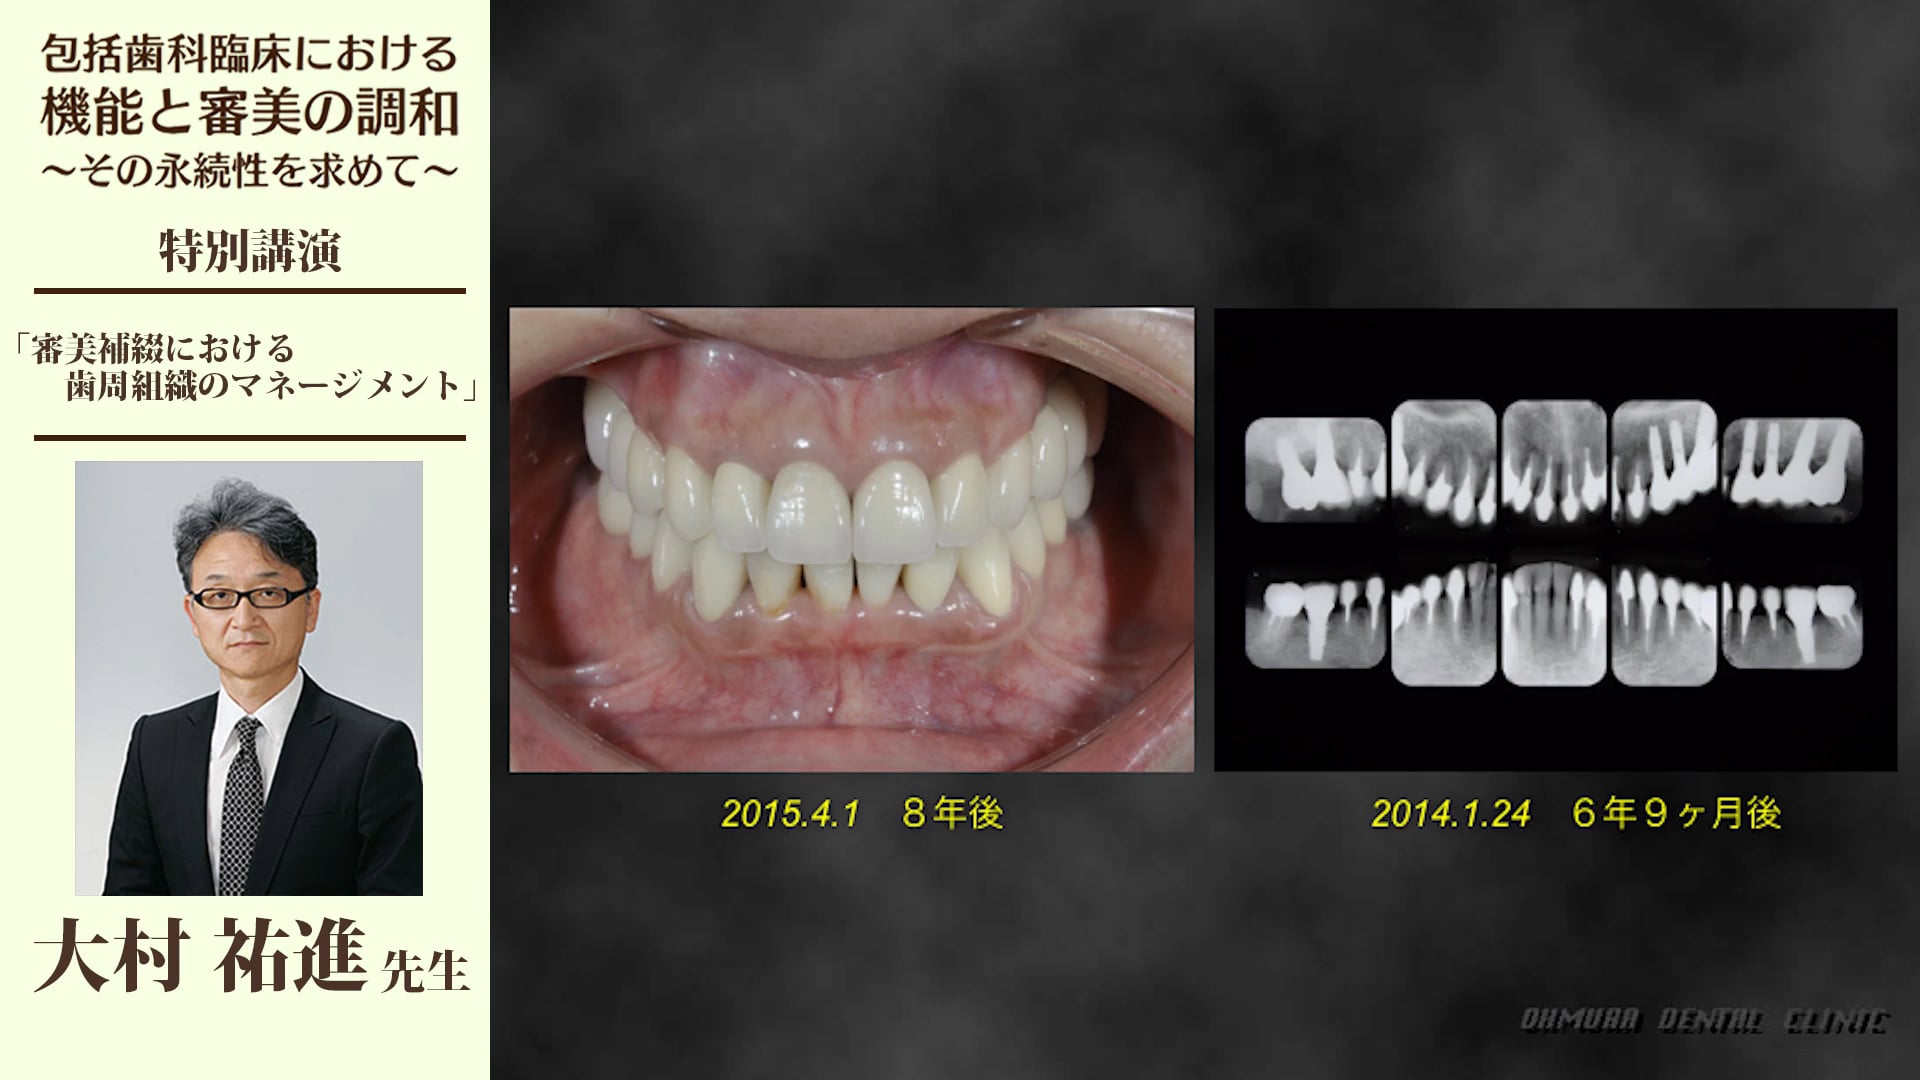 審美補綴における歯周組織のマネージメント #2